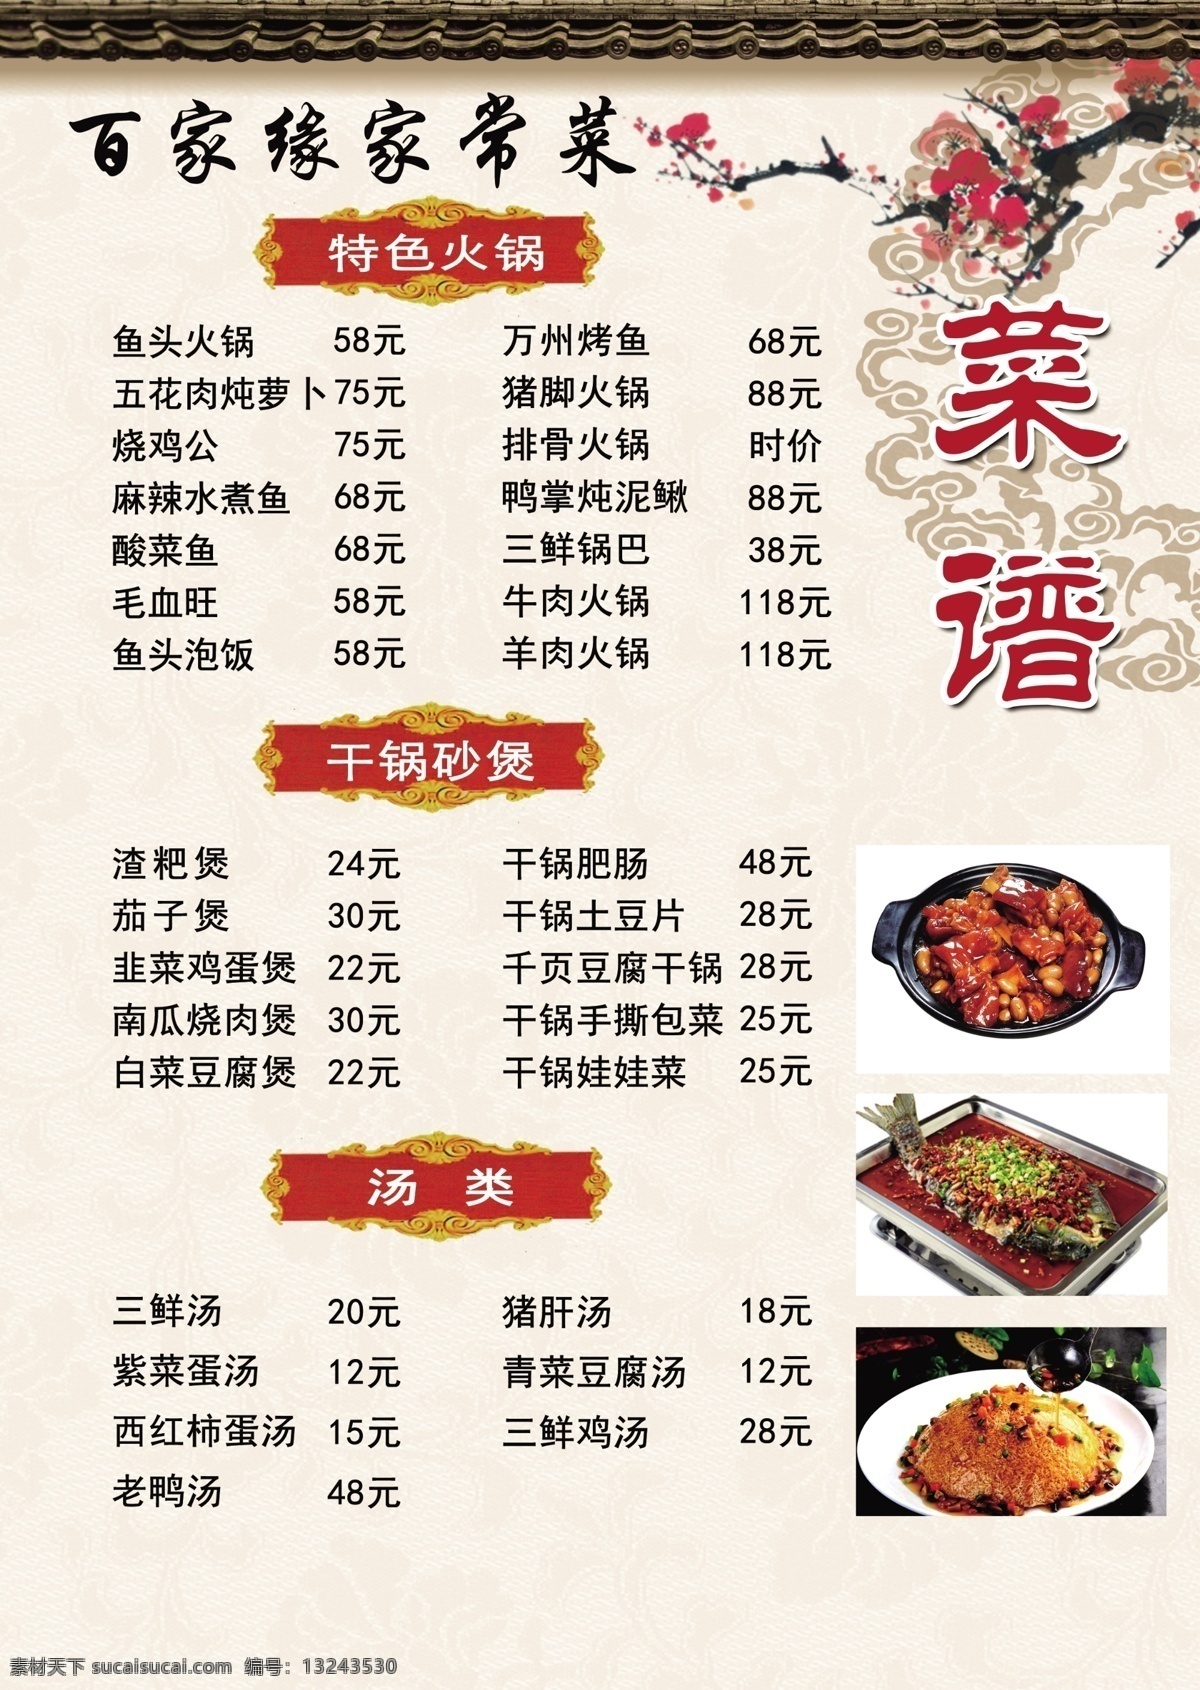 家常菜 菜单 百家彩 炒菜菜单 饭店菜单 室外广告设计